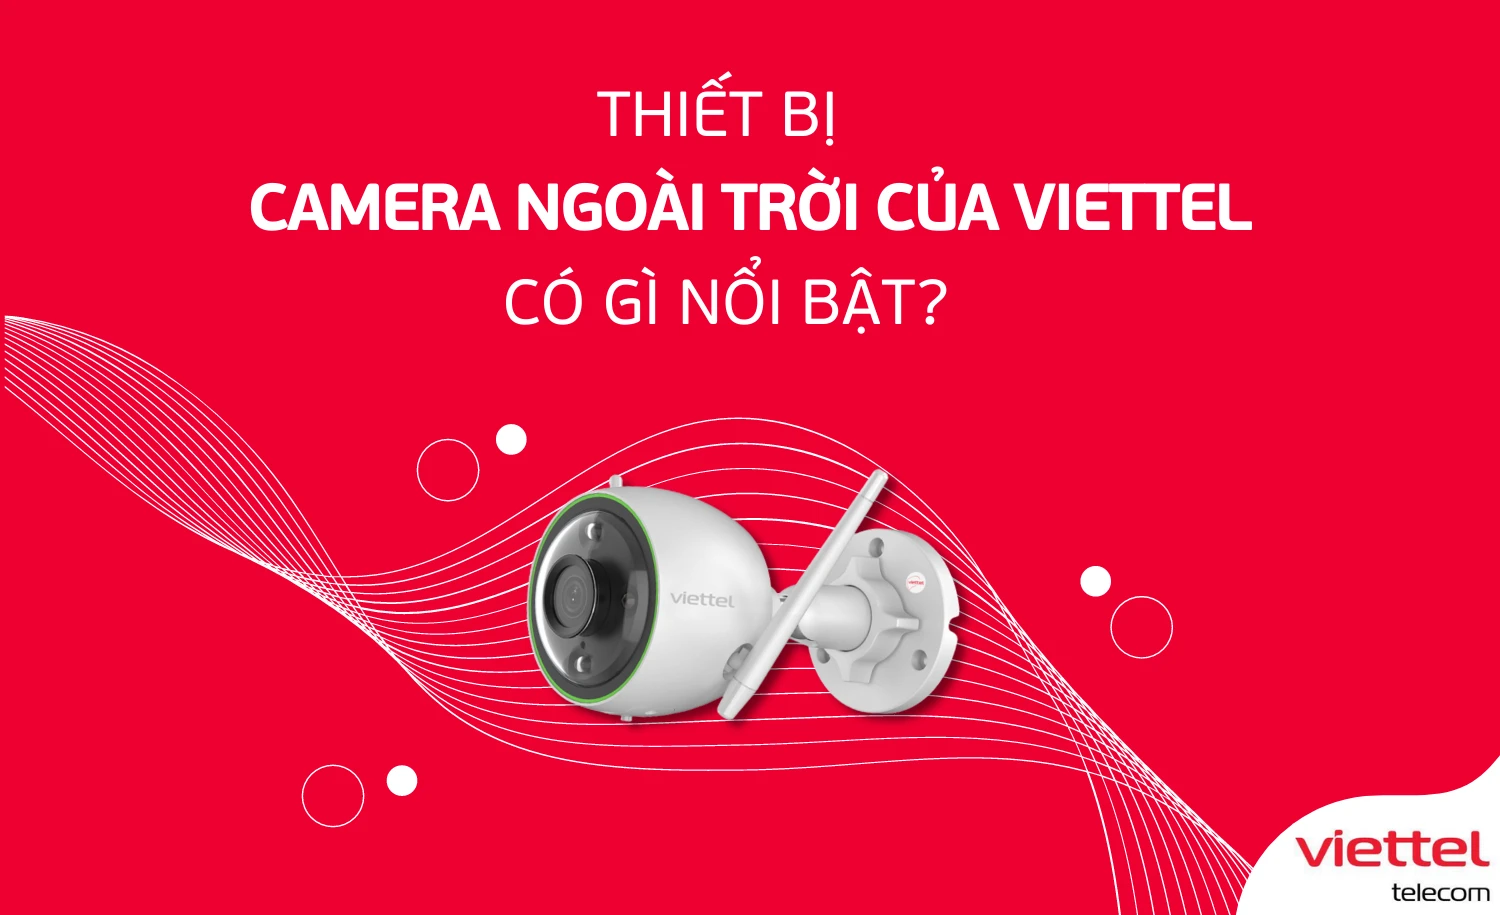 Thiết bị Camera ngoài trời của Viettel có gì nổi bật?